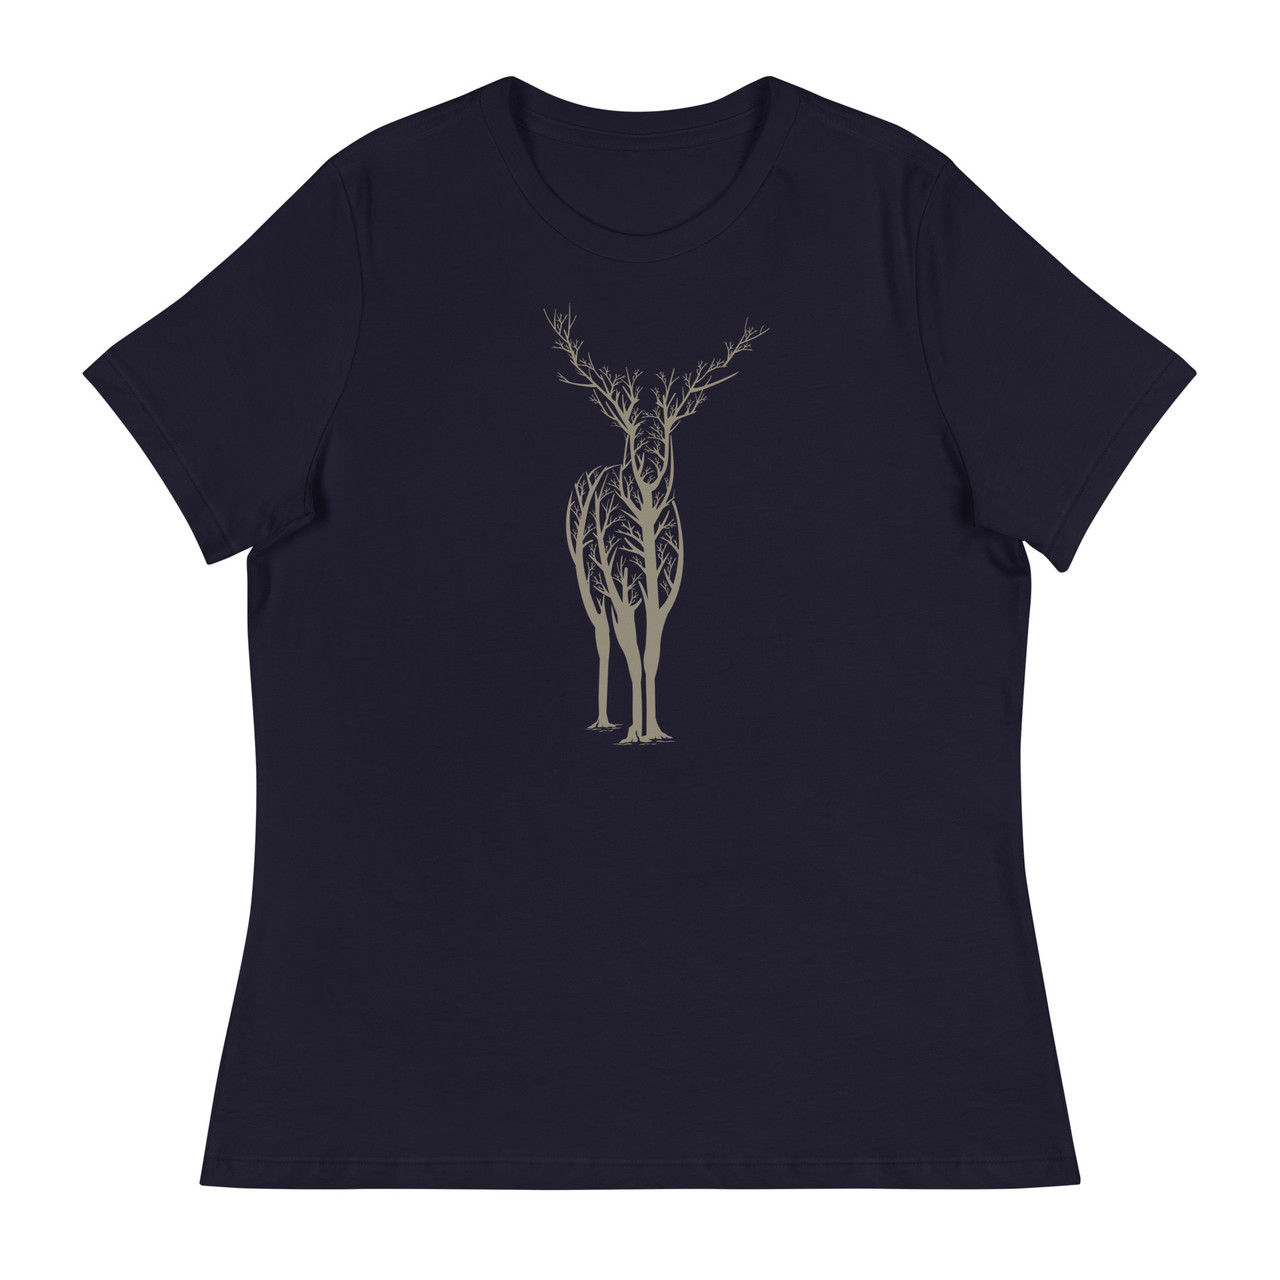 Deer Forest Women's Relaxed T-Shirt - Bella + Canvas 6400